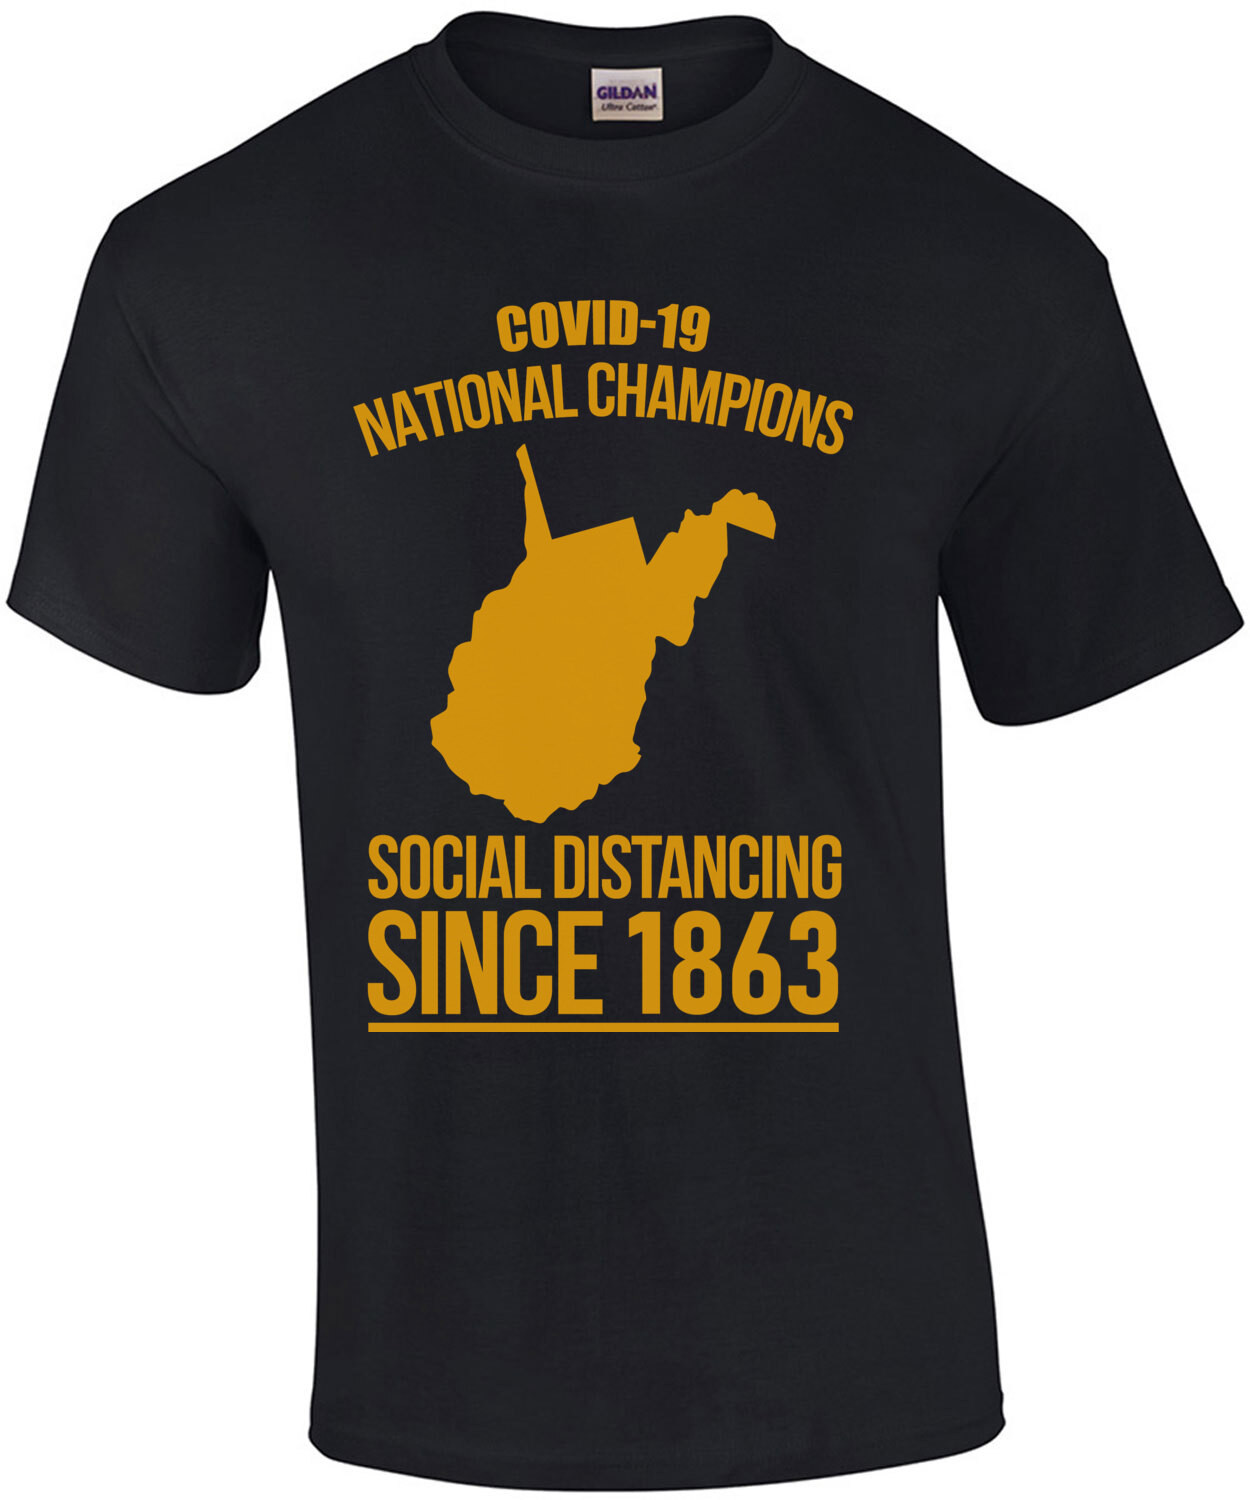 Covid-19 National Champions - West Virginia - Coronavirus T-Shirt